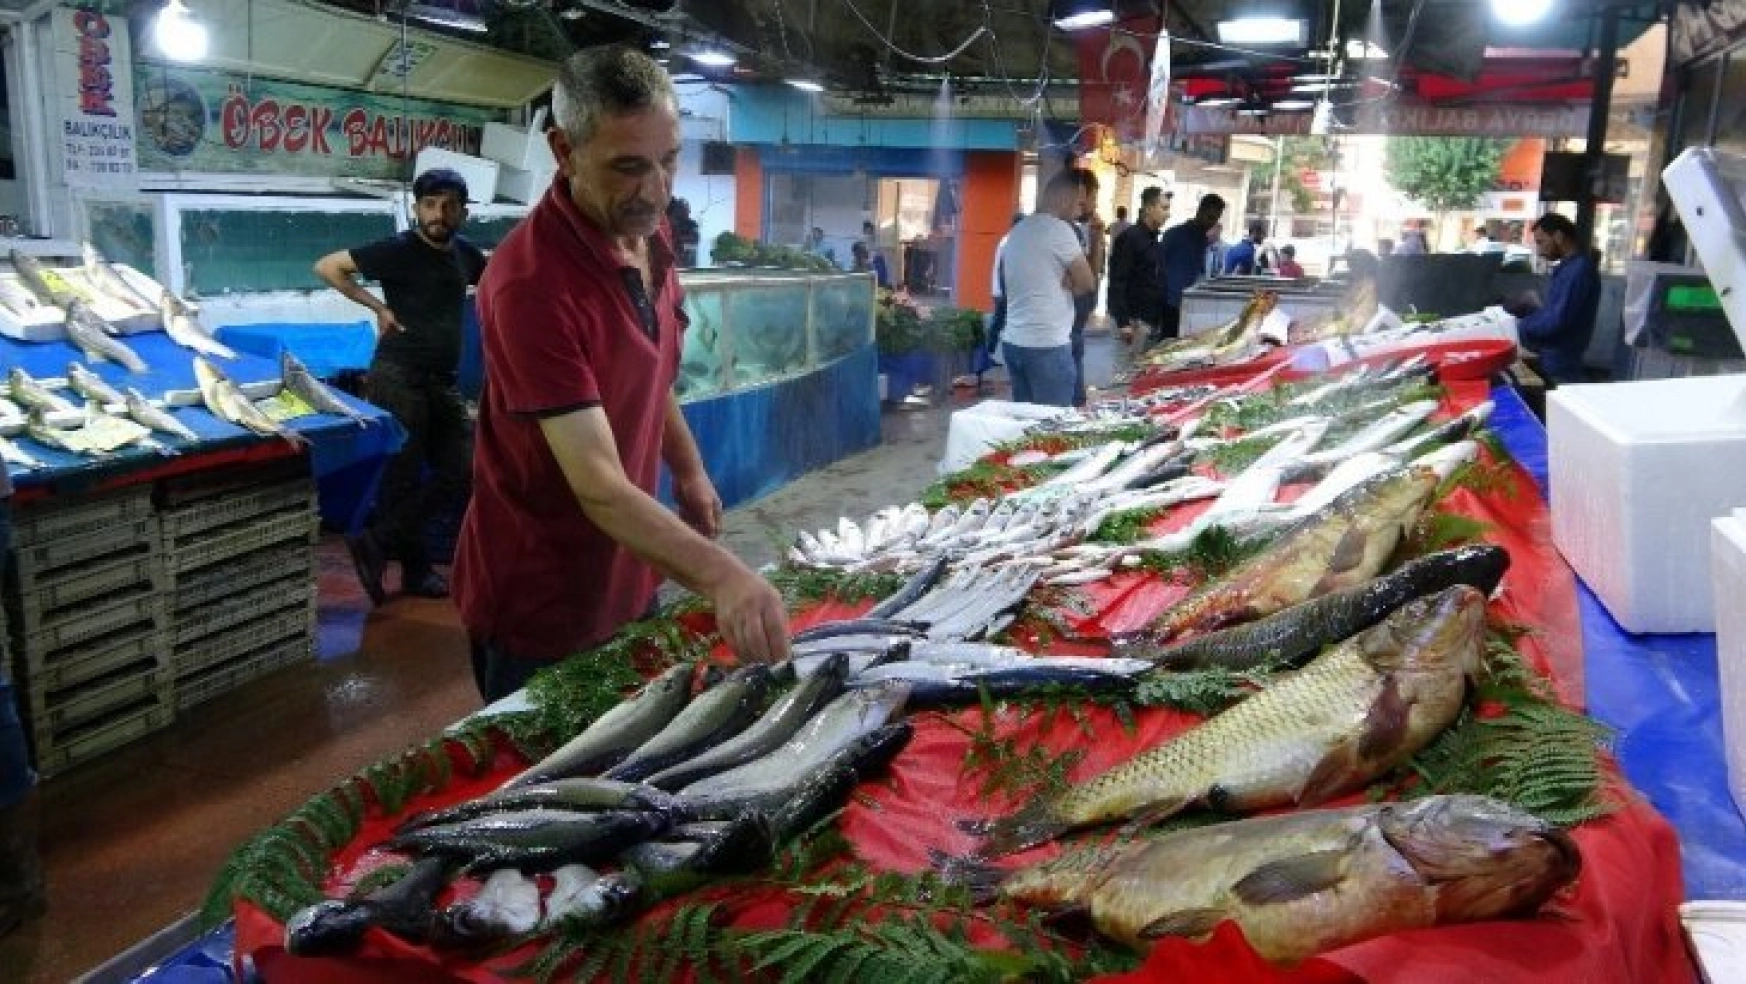 Tatlı su balıklarının rakibi, deniz balıkları Elazığ'da yerini aldı